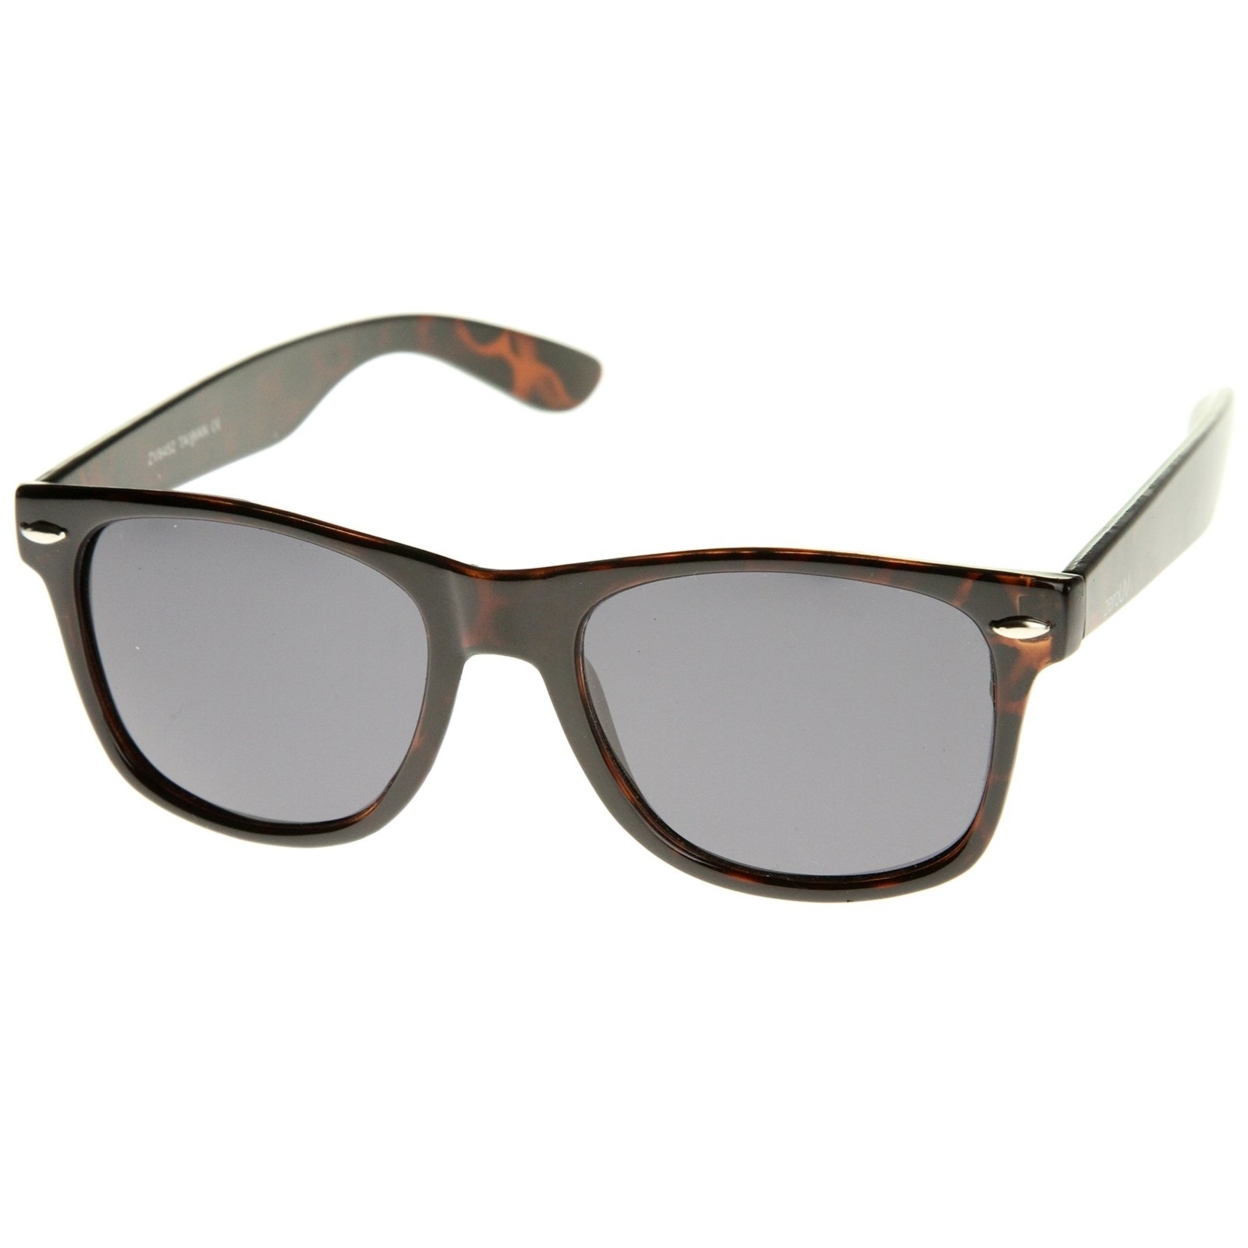 Retro Wide Temple Polarized Lens Horn Rimmed Sunglasses 55mm - 2-Pack , Black + Tortoise Polarized